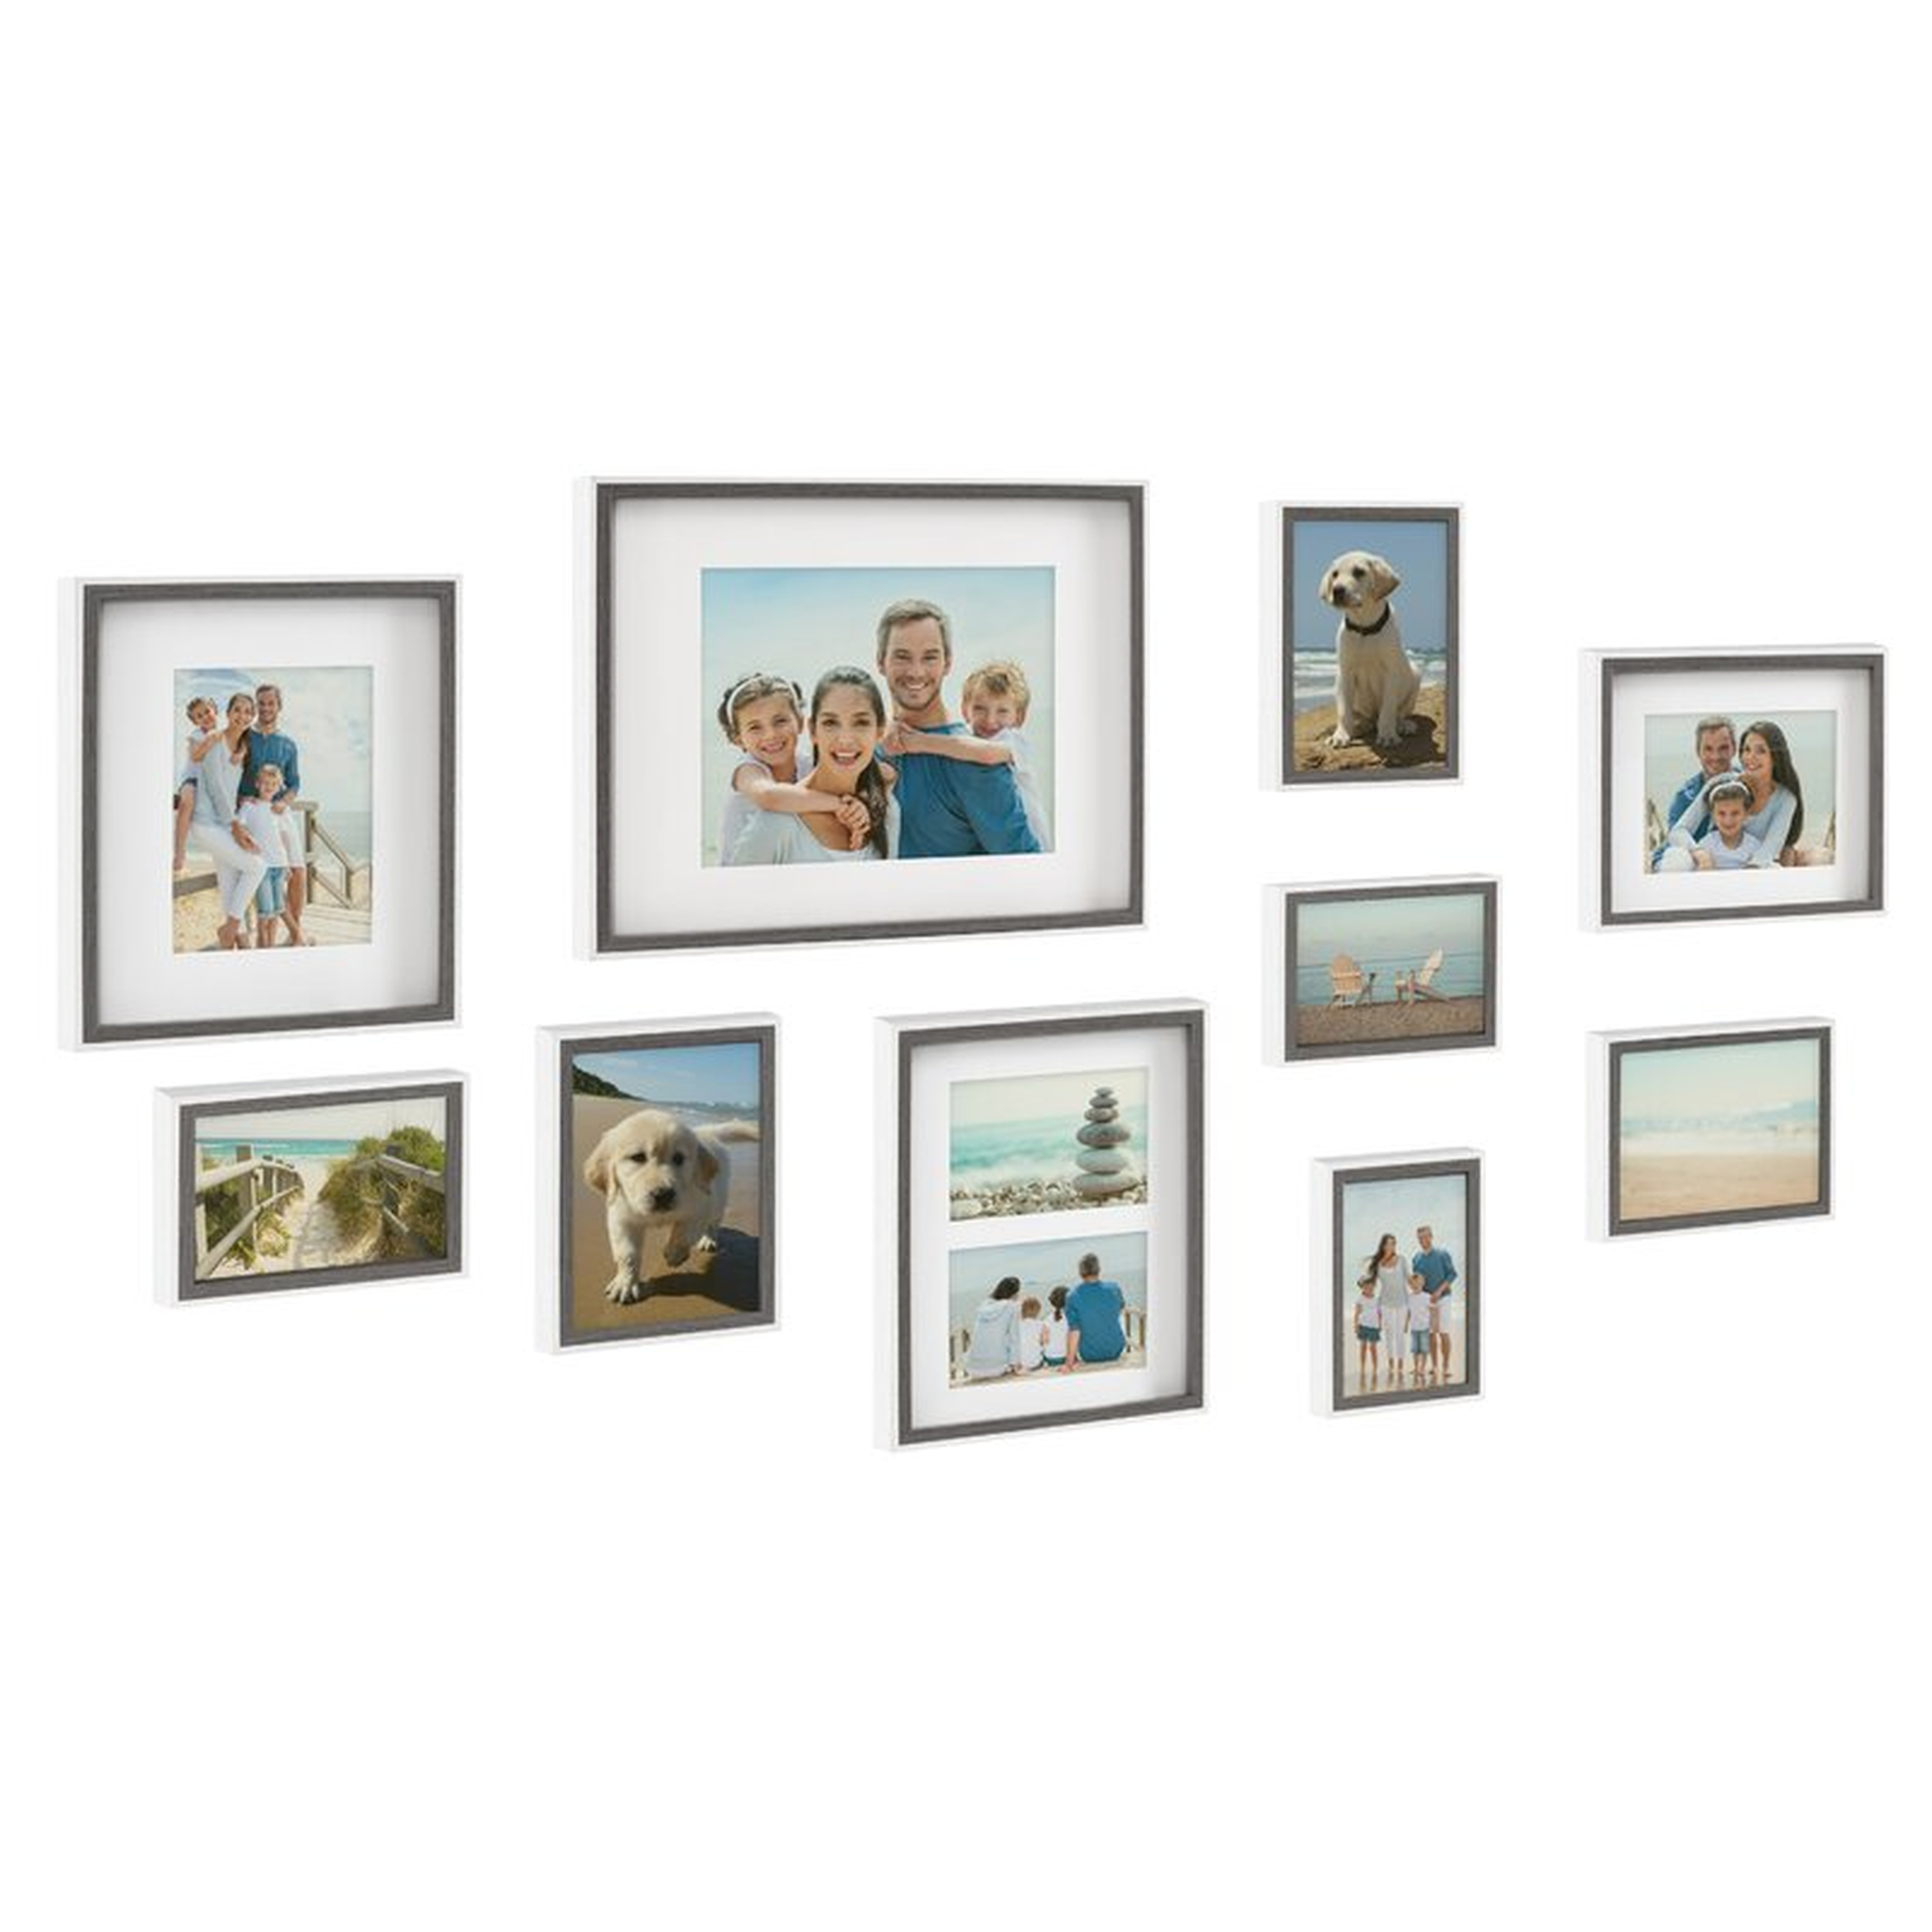 Beppe 10 Piece Gallery Wall Frame Set - Wayfair